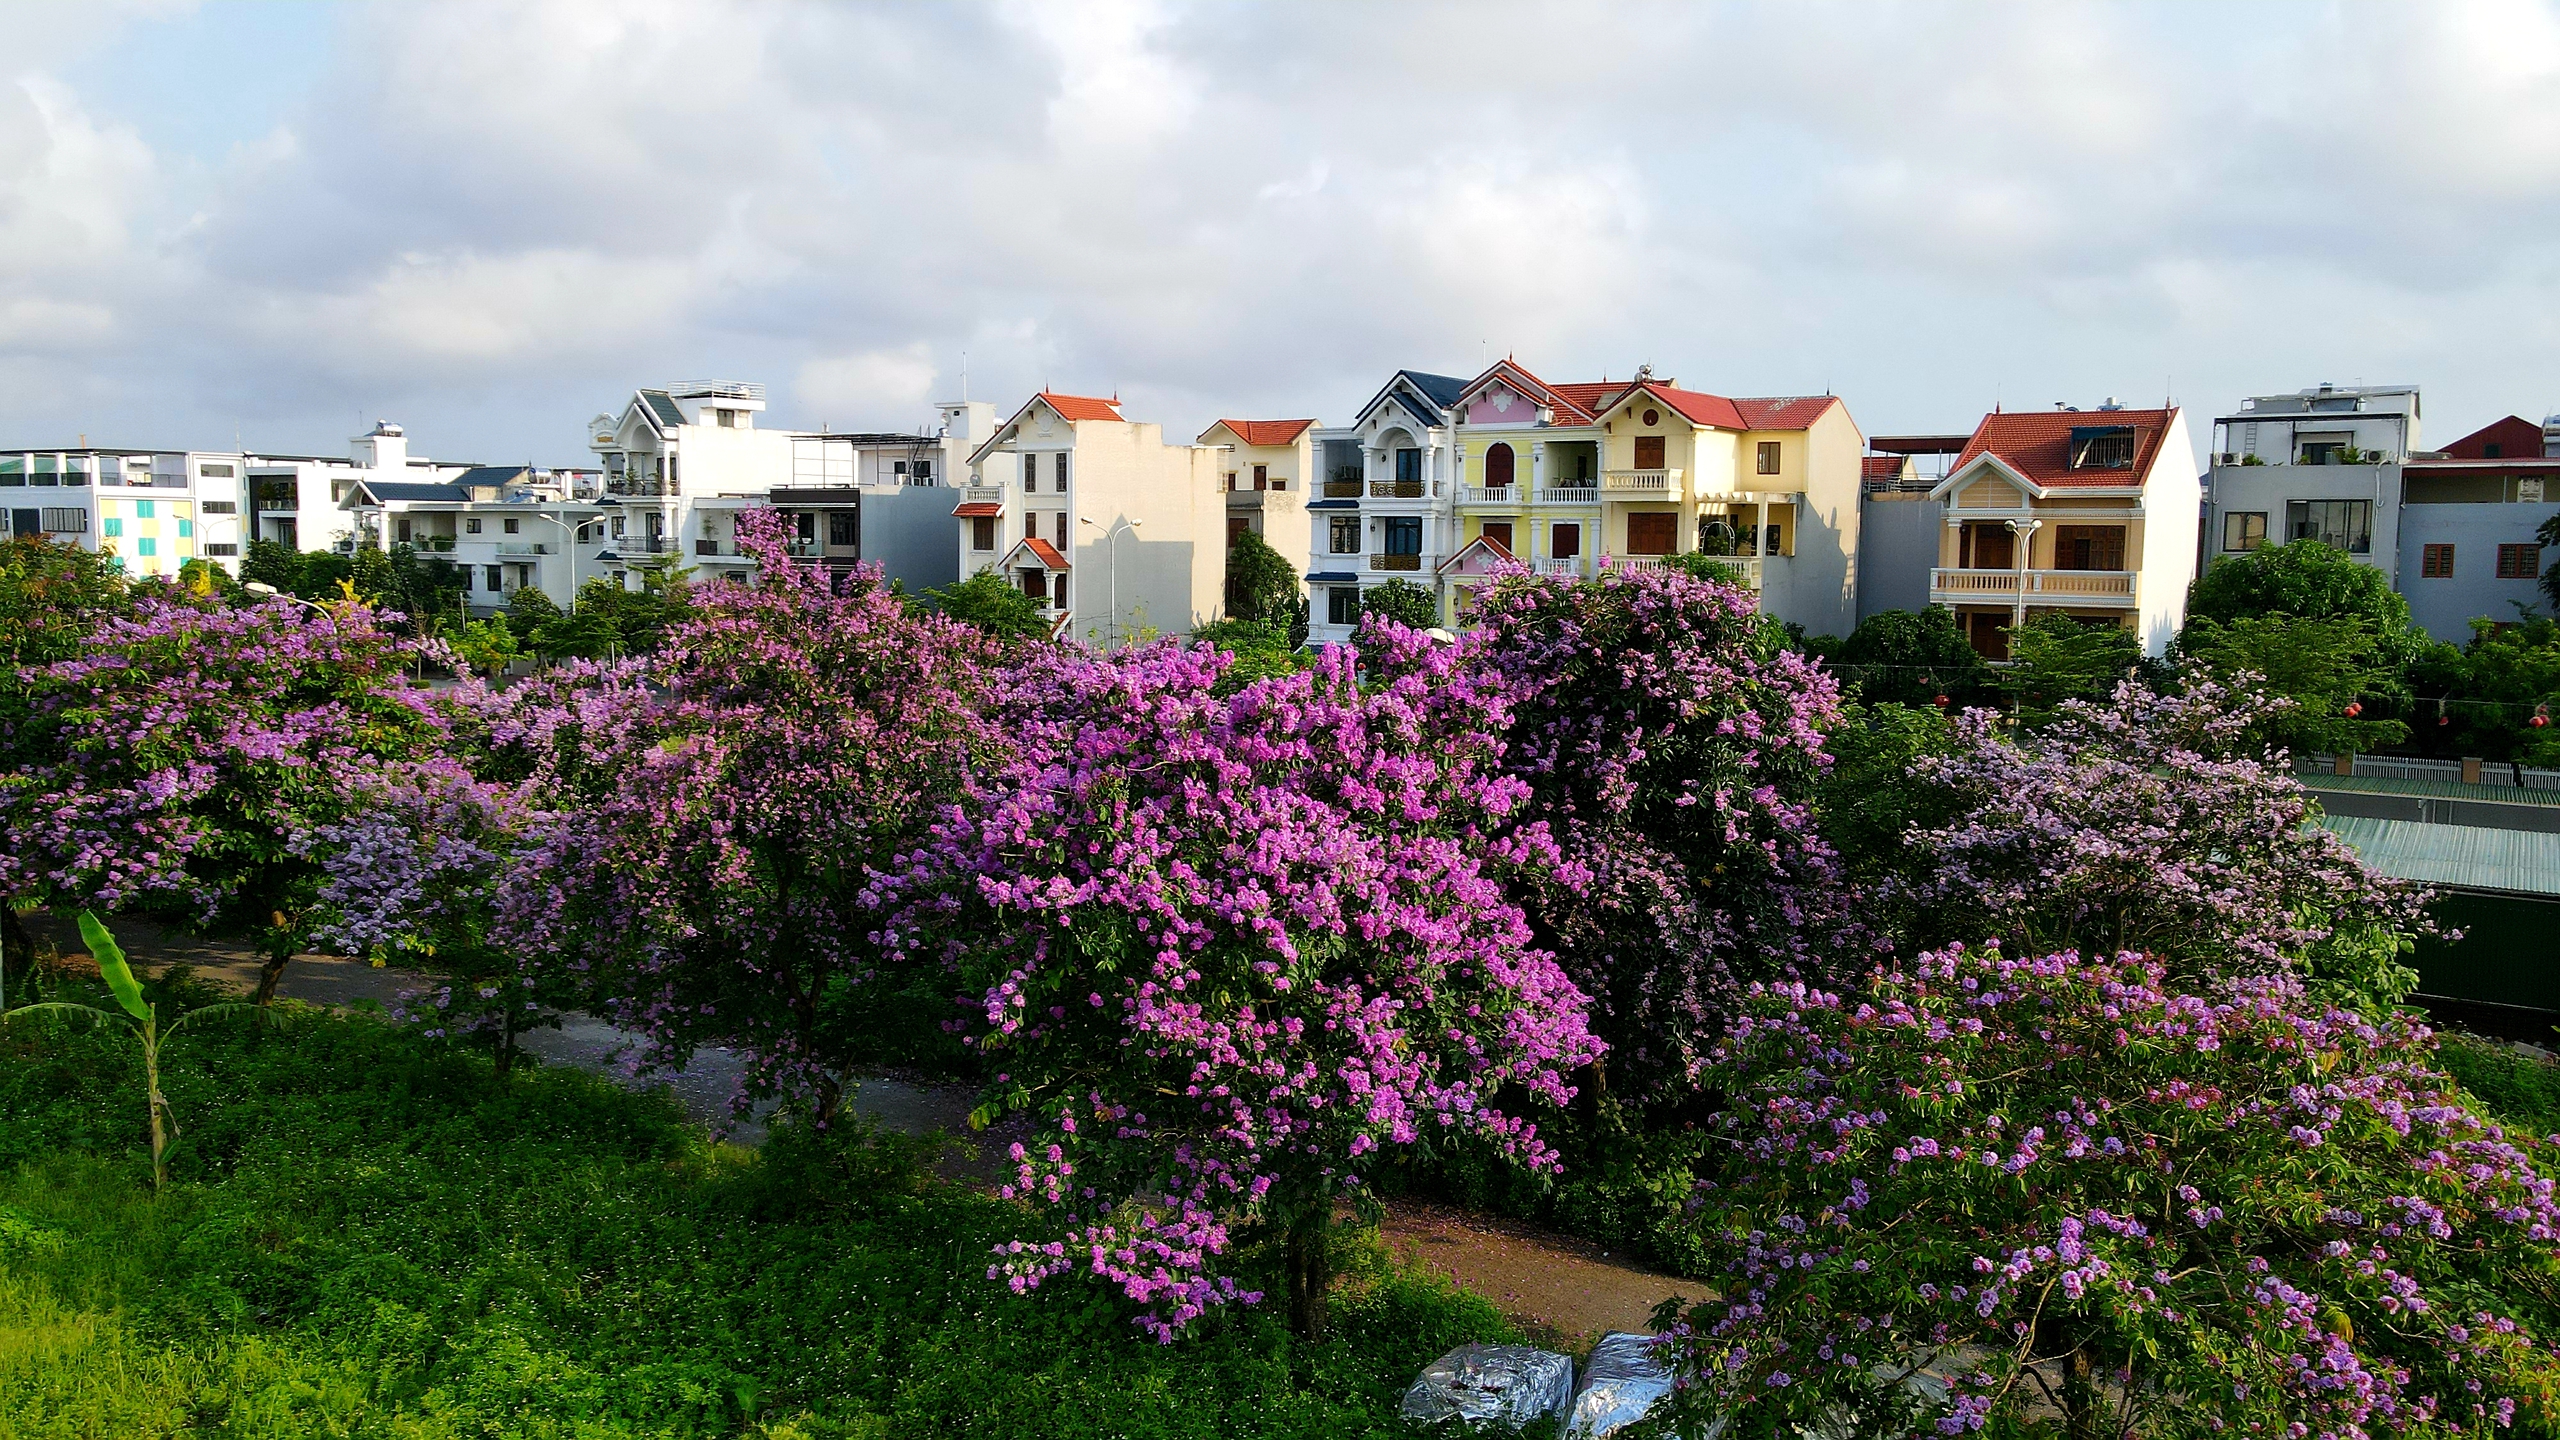 Nhiều khu đô thị mới ở Hải Phòng khi hình thành, cây bằng lăng được chọn là một trong những cây ưu tiên trồng làm cây xanh bóng mát đang đồng loạt trổ hoa. Trong ảnh: Bằng lăng phủ tím khu đô thị mới Đằng Hải (Q.Hải An)